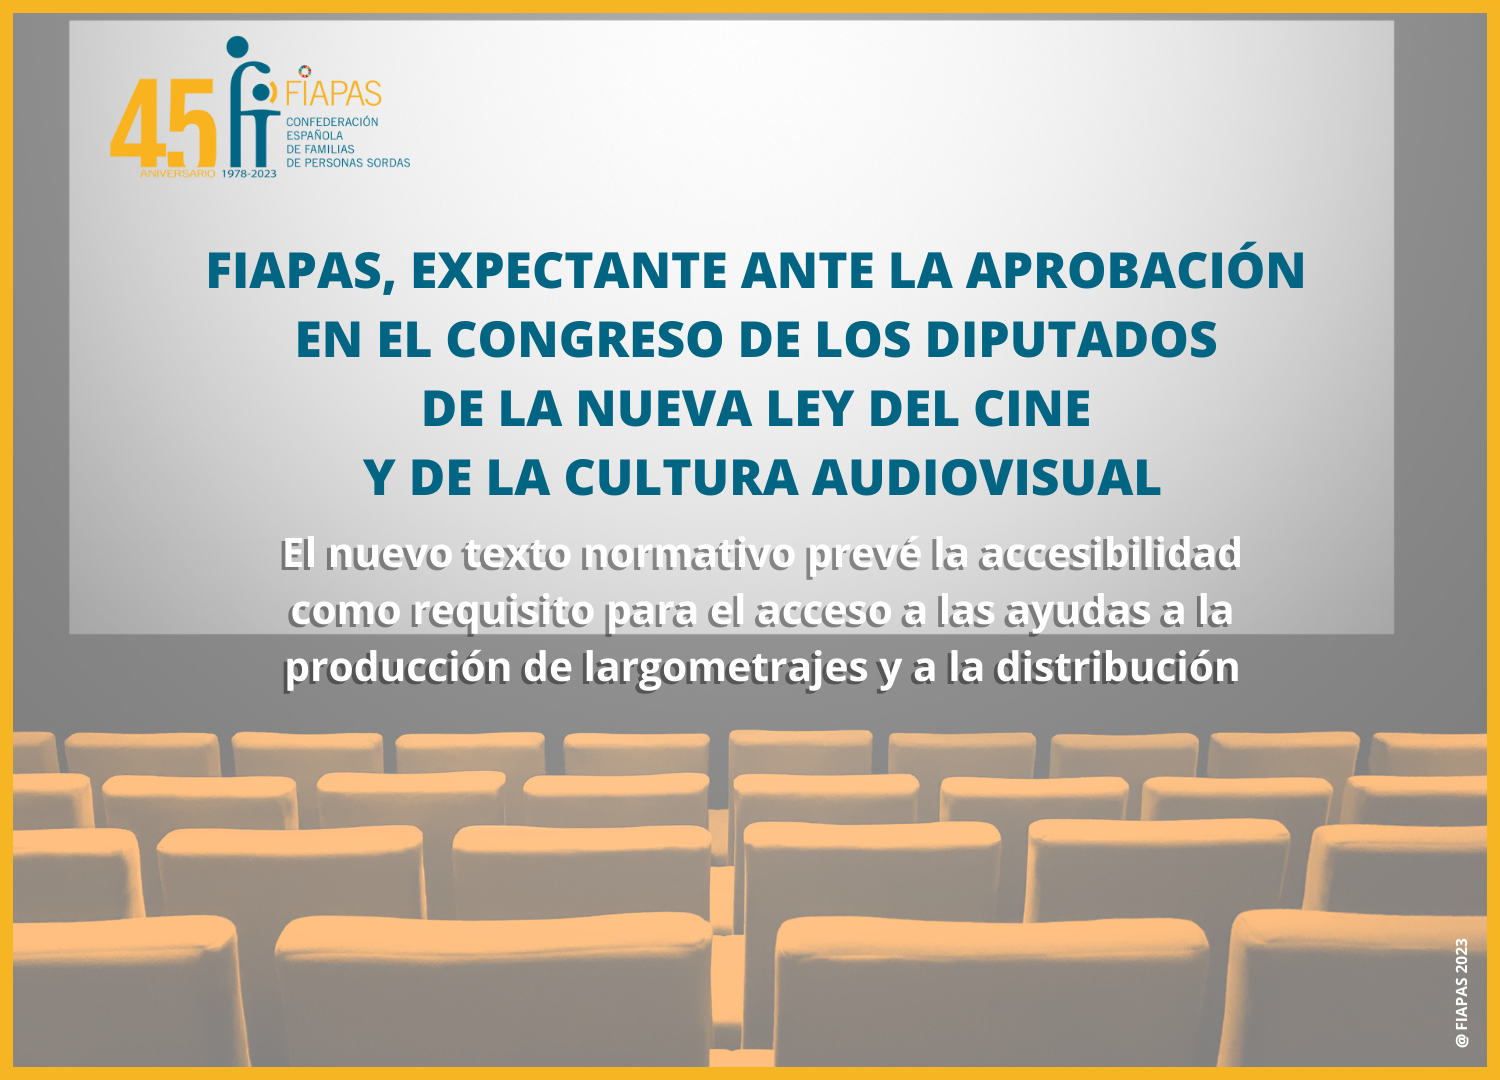 FIAPAS y la aprobación en el congreso de la nueva ley del cine y de la cultura audiovisual